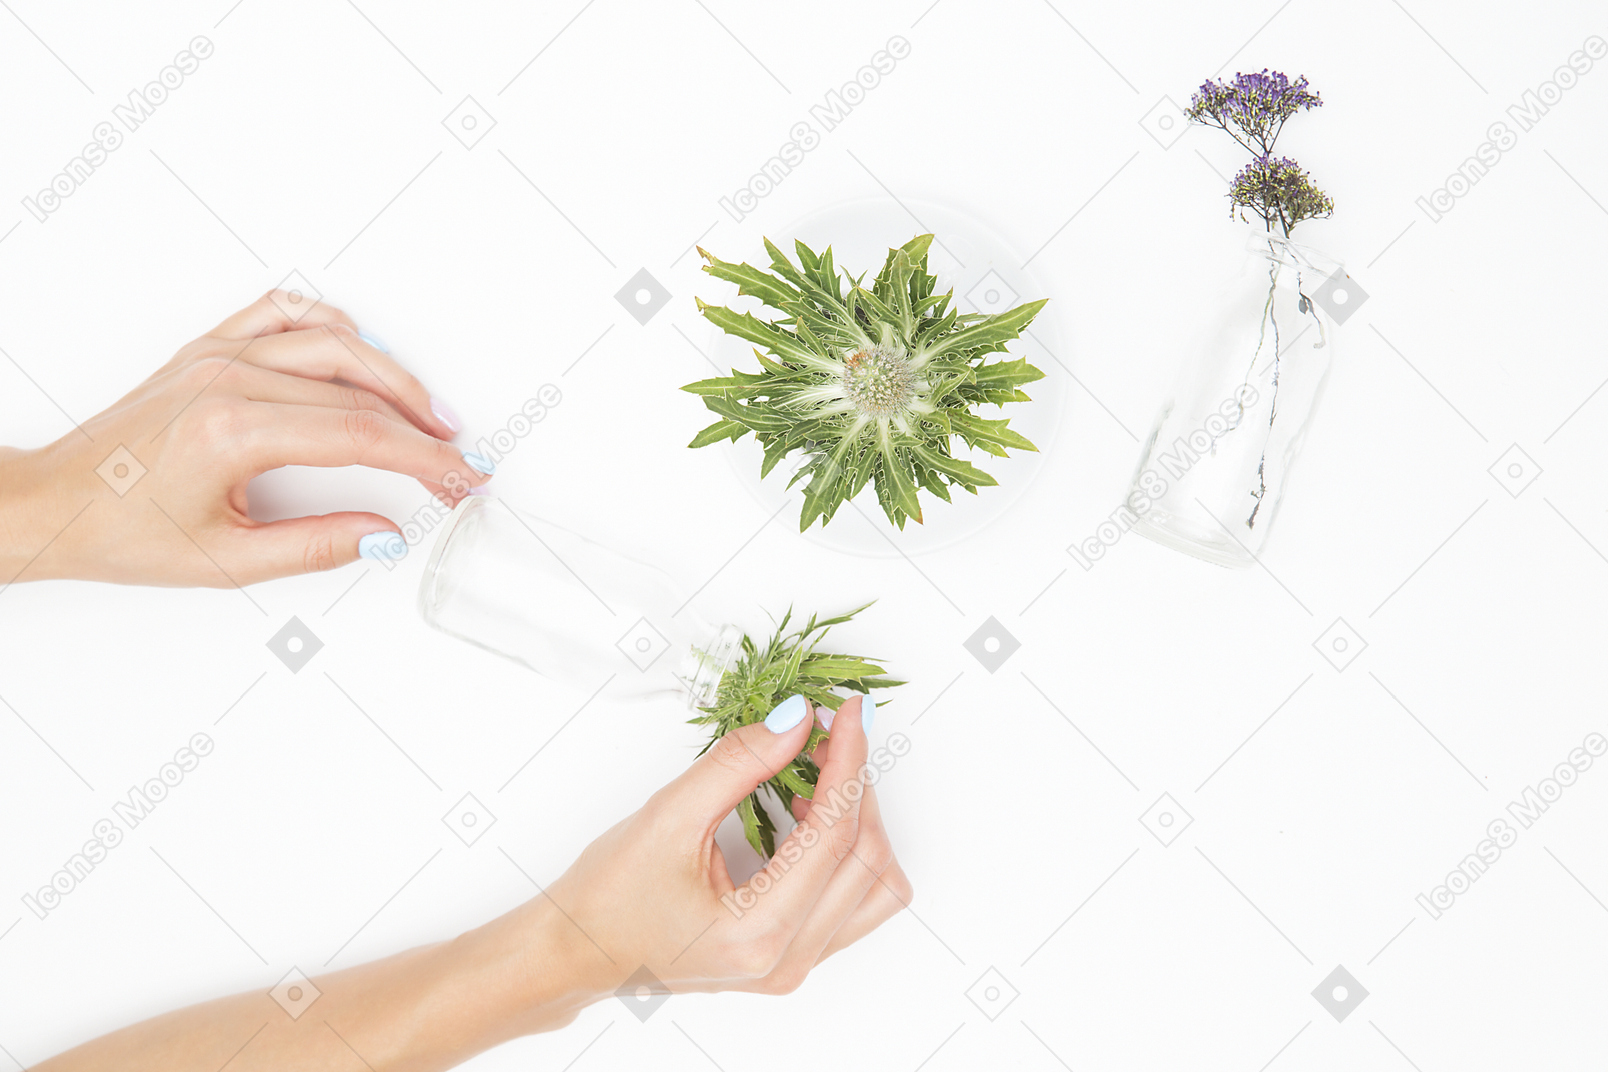 Mano femminile accanto ai diversi oggetti in vetro e piante verdi